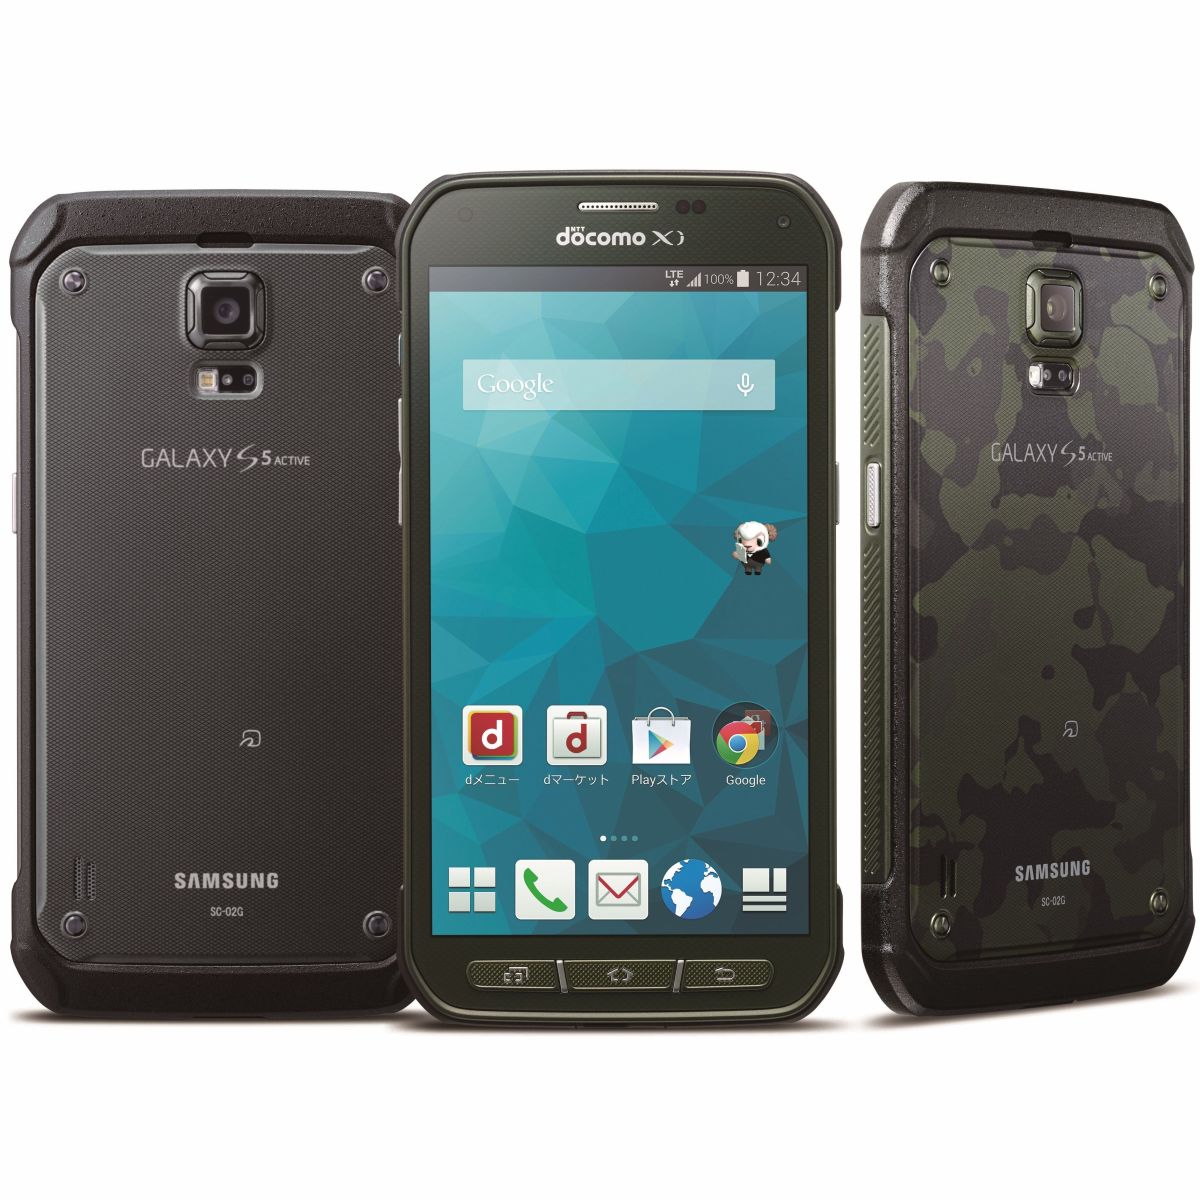 Samsung Galaxy S Active